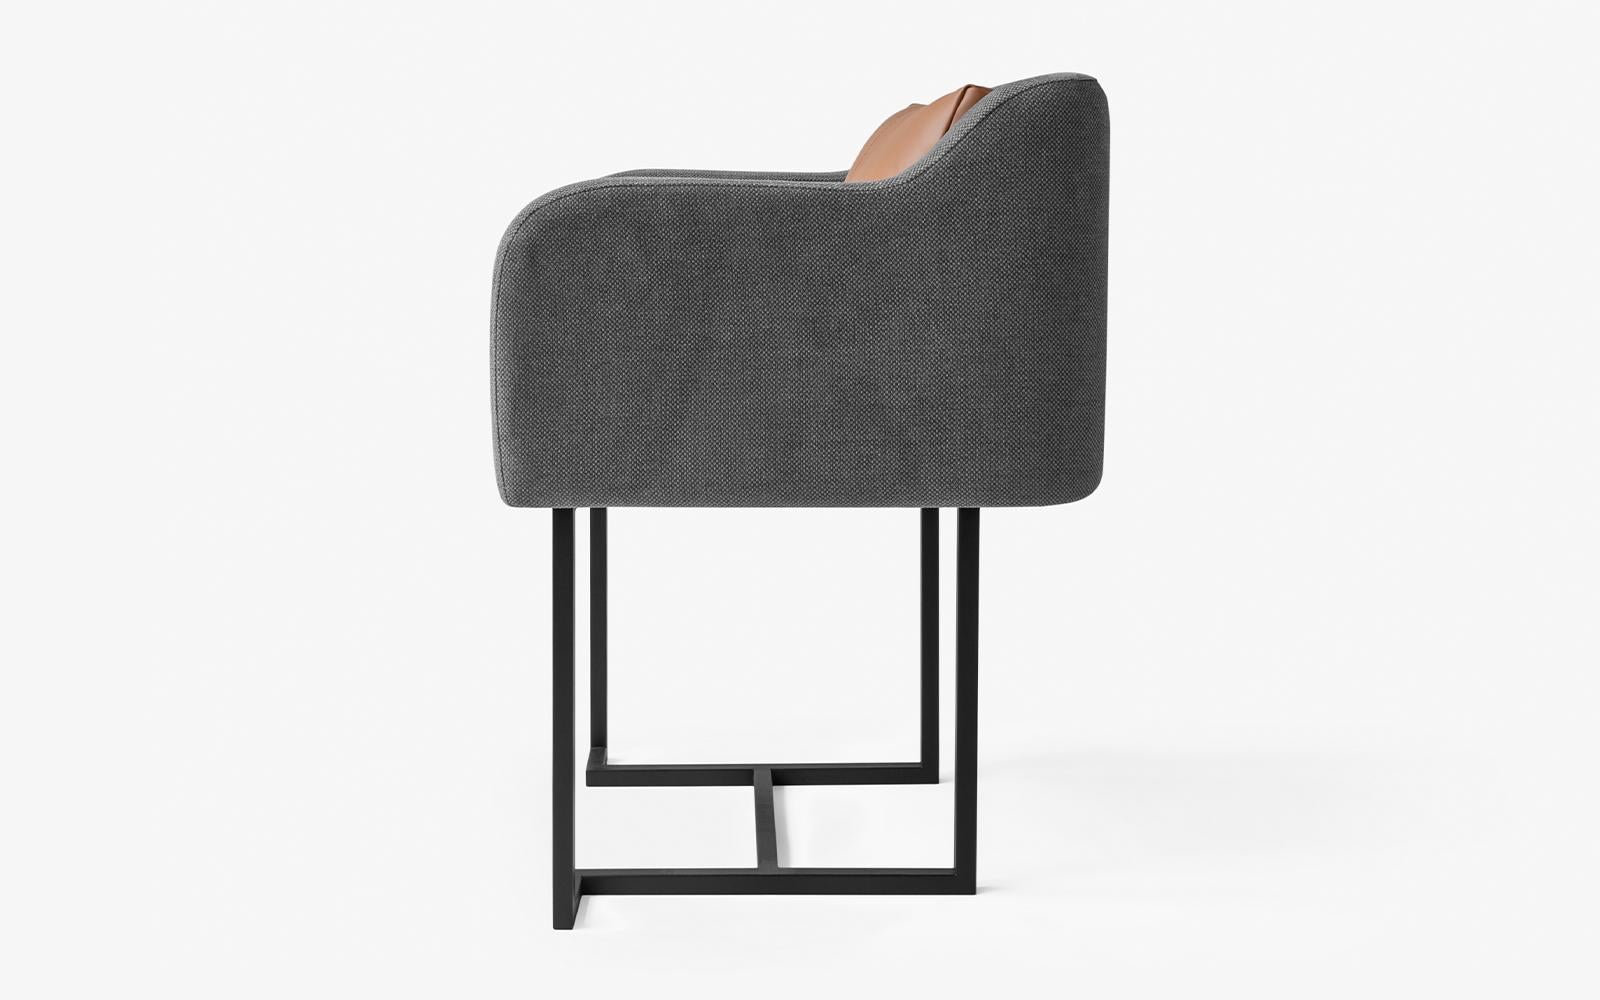 Cet ensemble comprend 2 chaises Papillonne en métal noir et 1 chaise Papillonne à roulettes.

La chaise Papillonne en métal noir s'invite dans votre salon grâce à ses détails, alliant confort et élégance.

Mesures : Longueur : 23.6'' / profondeur :